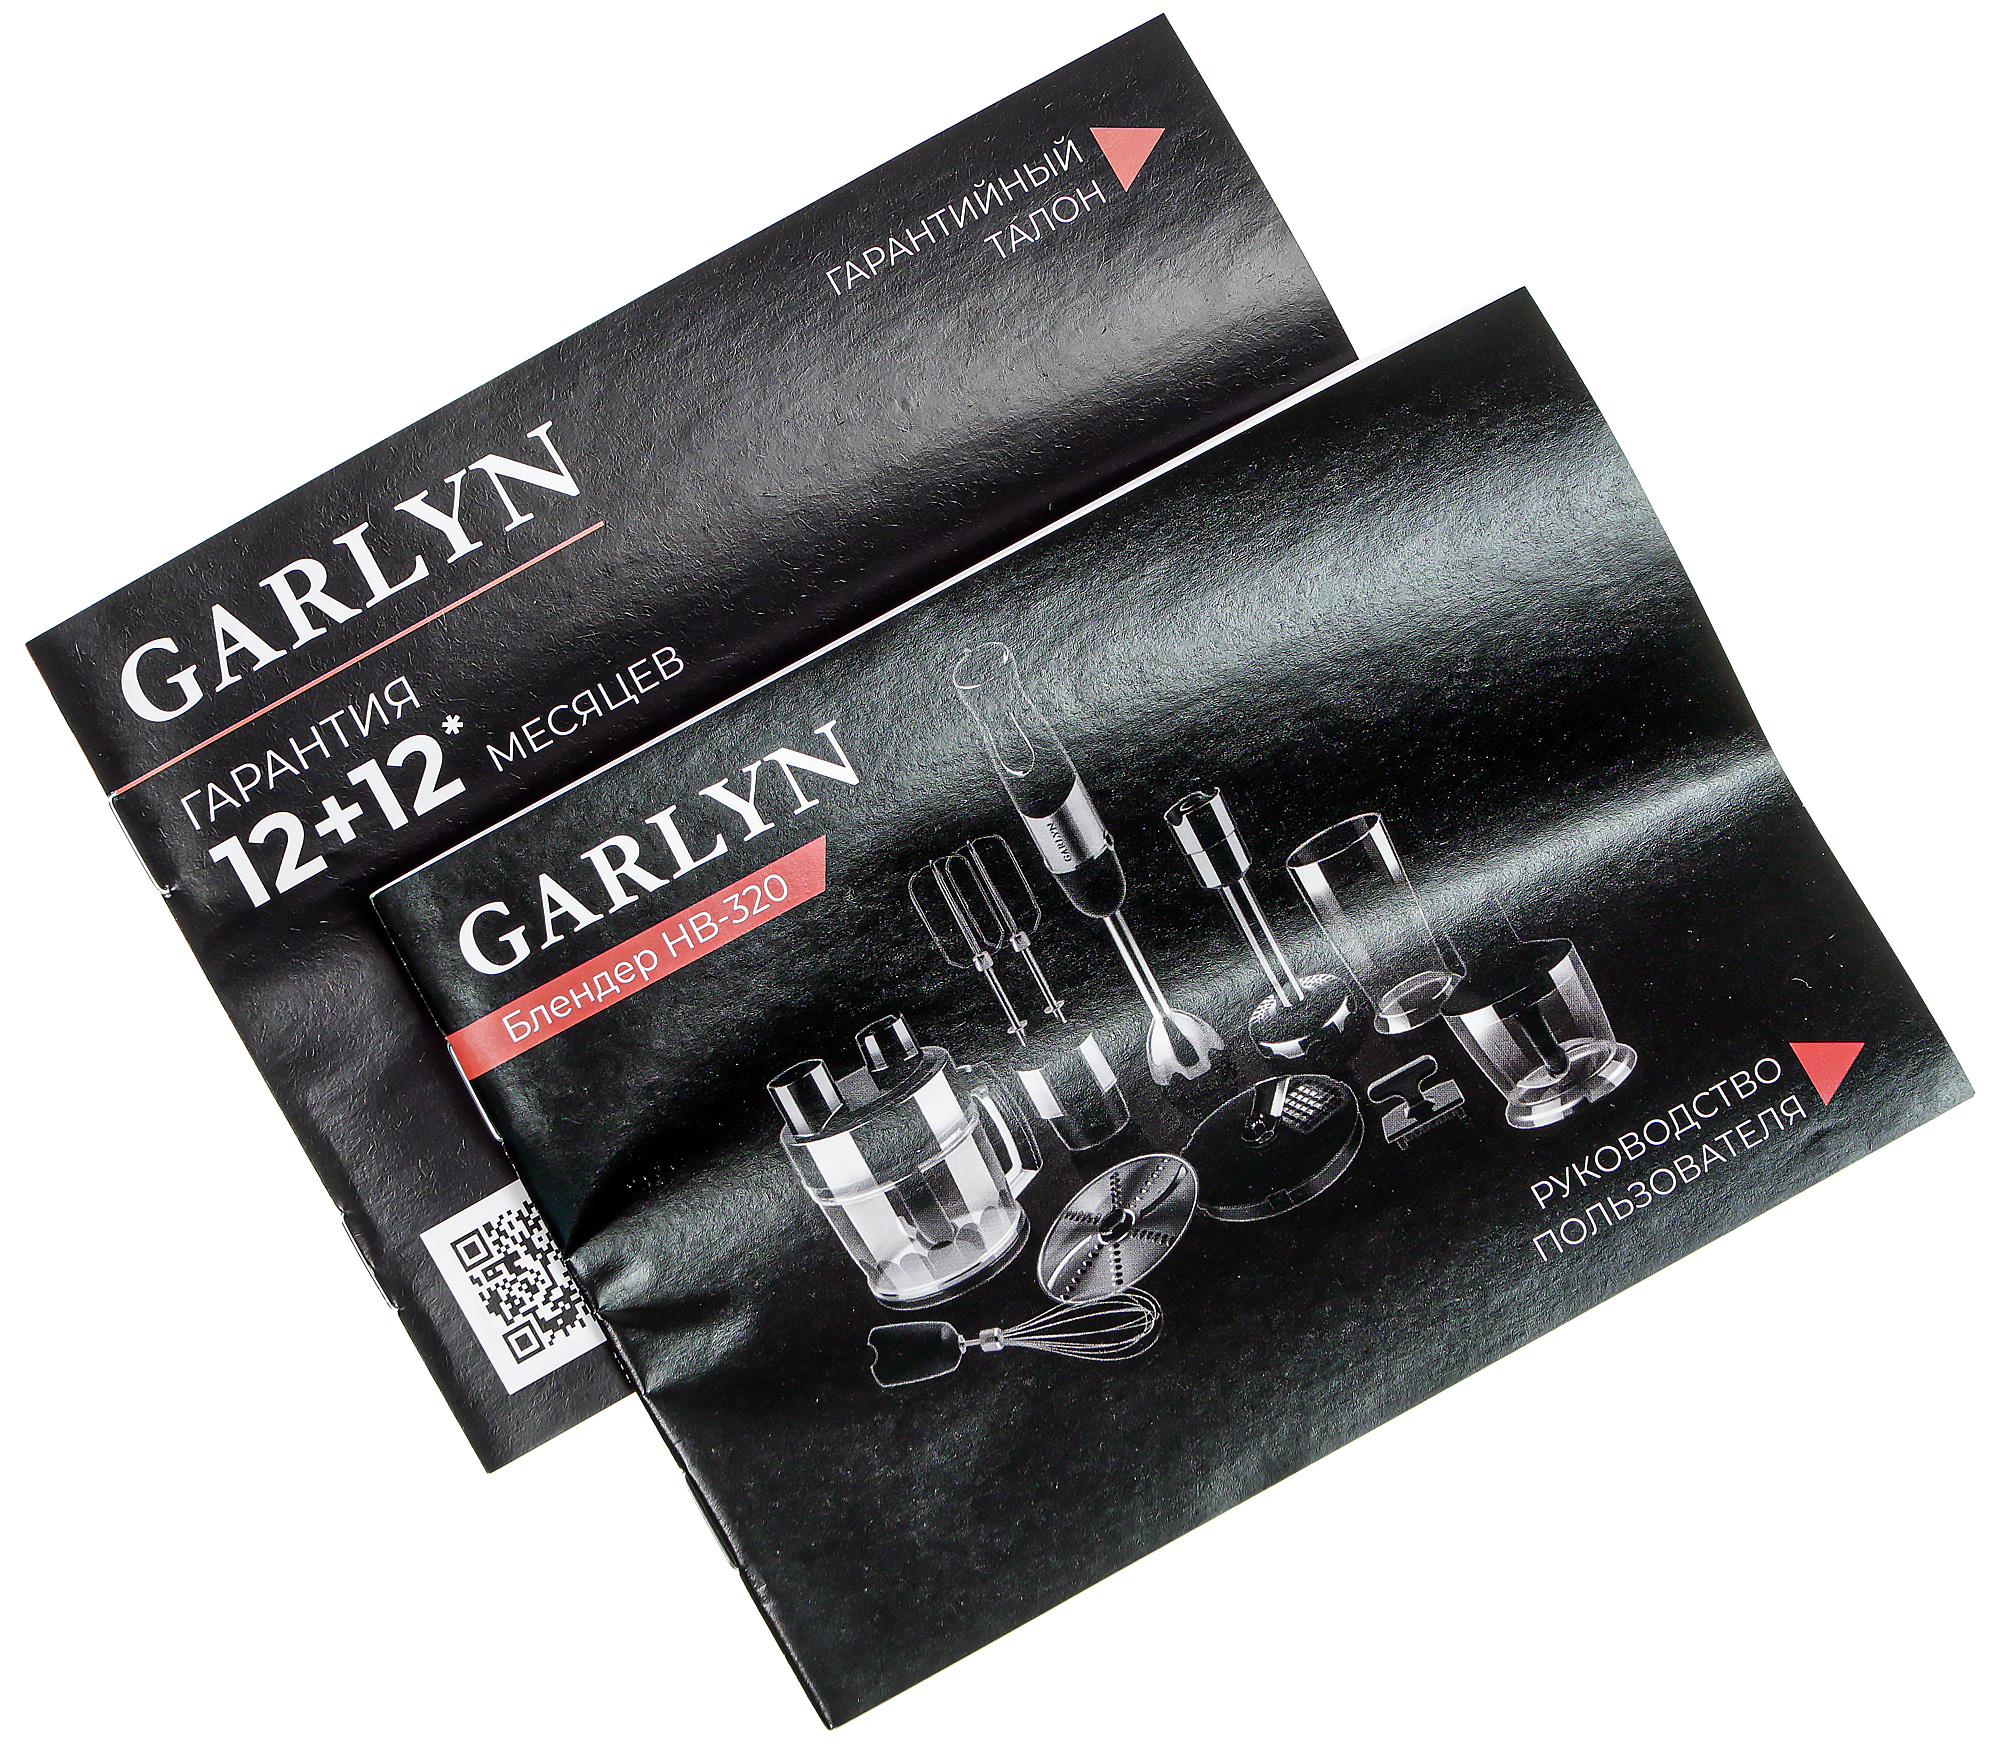 Блендер hb 320. Garlyn HB-320. Блендер Garlyn HB-320. Garlyn бренд. Нож на блендер HB-320 Garlyn.